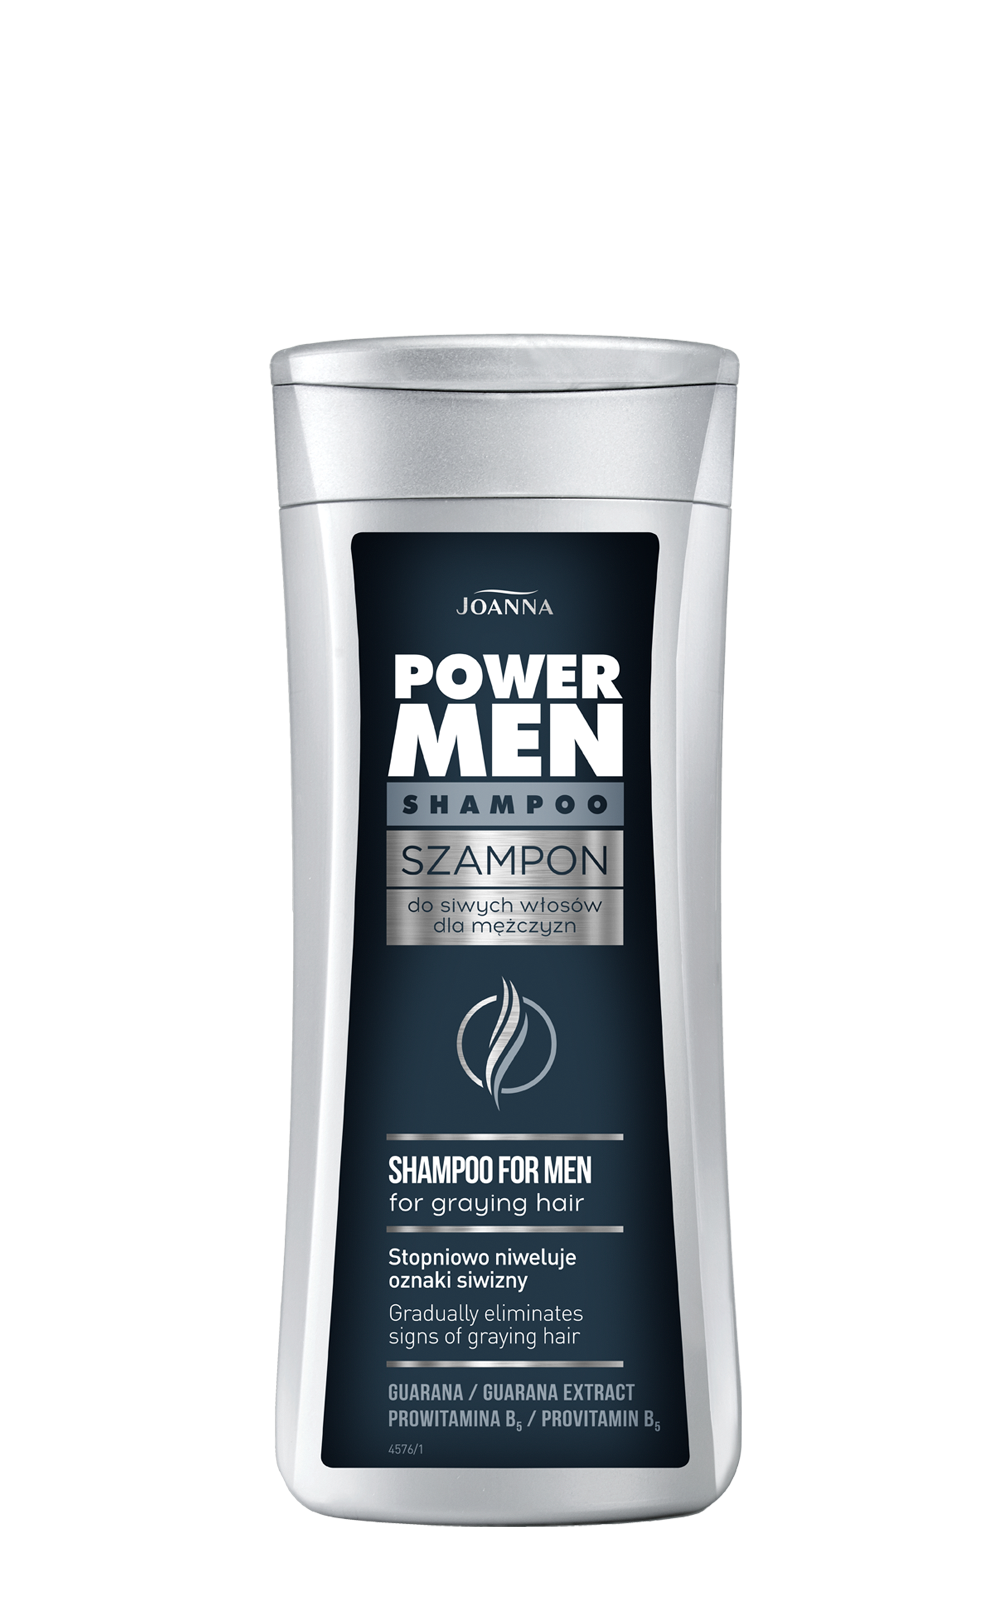 Szampon do włosów dla mężczyzn do siwych włosów Joanna Power Men